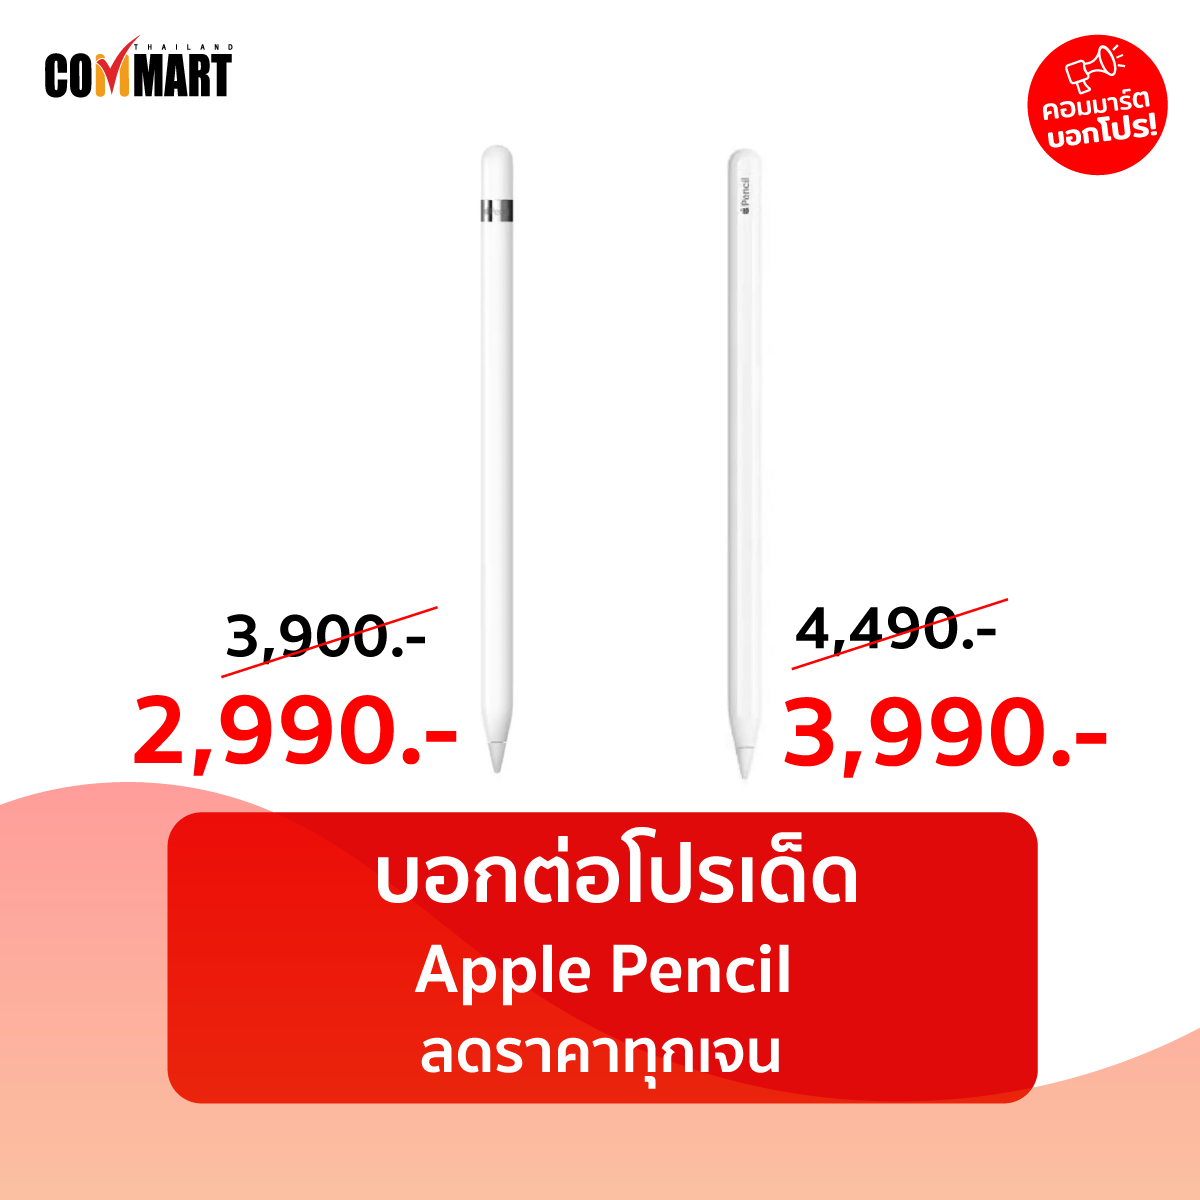 บอกต่อโปรเด็ด Apple Pencil  ลดราคาทุกเจน